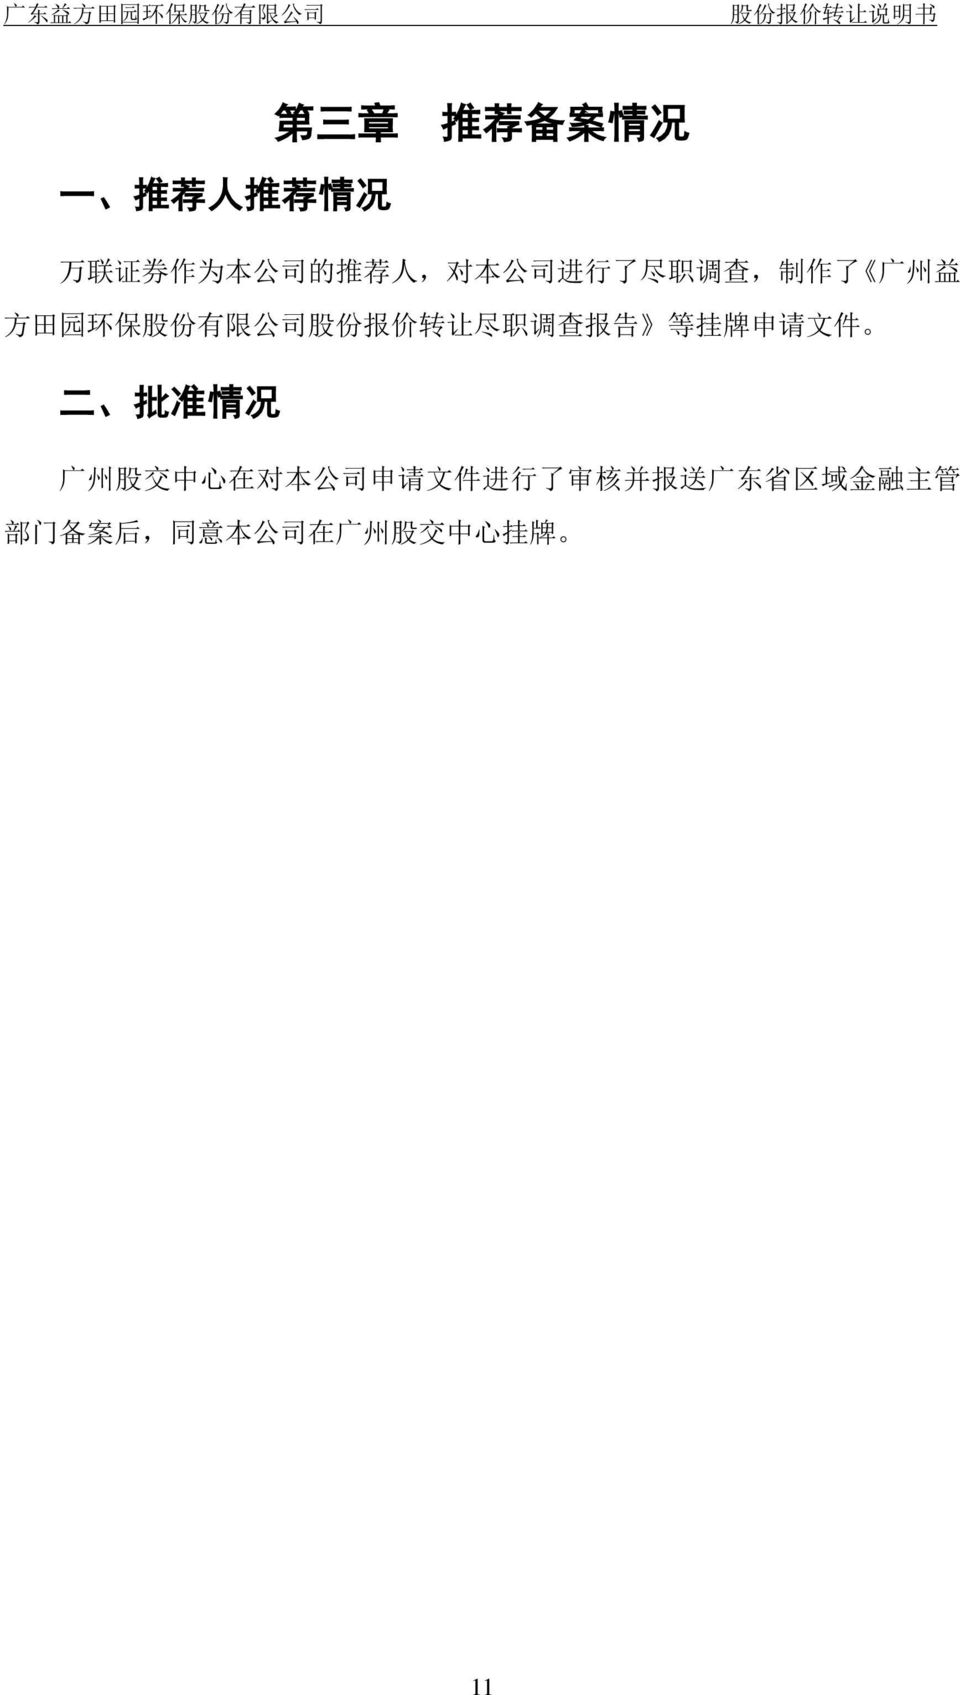 调 查 报 告 等 挂 牌 申 请 文 件 二 批 准 情 况 广 州 股 交 中 心 在 对 本 公 司 申 请 文 件 进 行 了